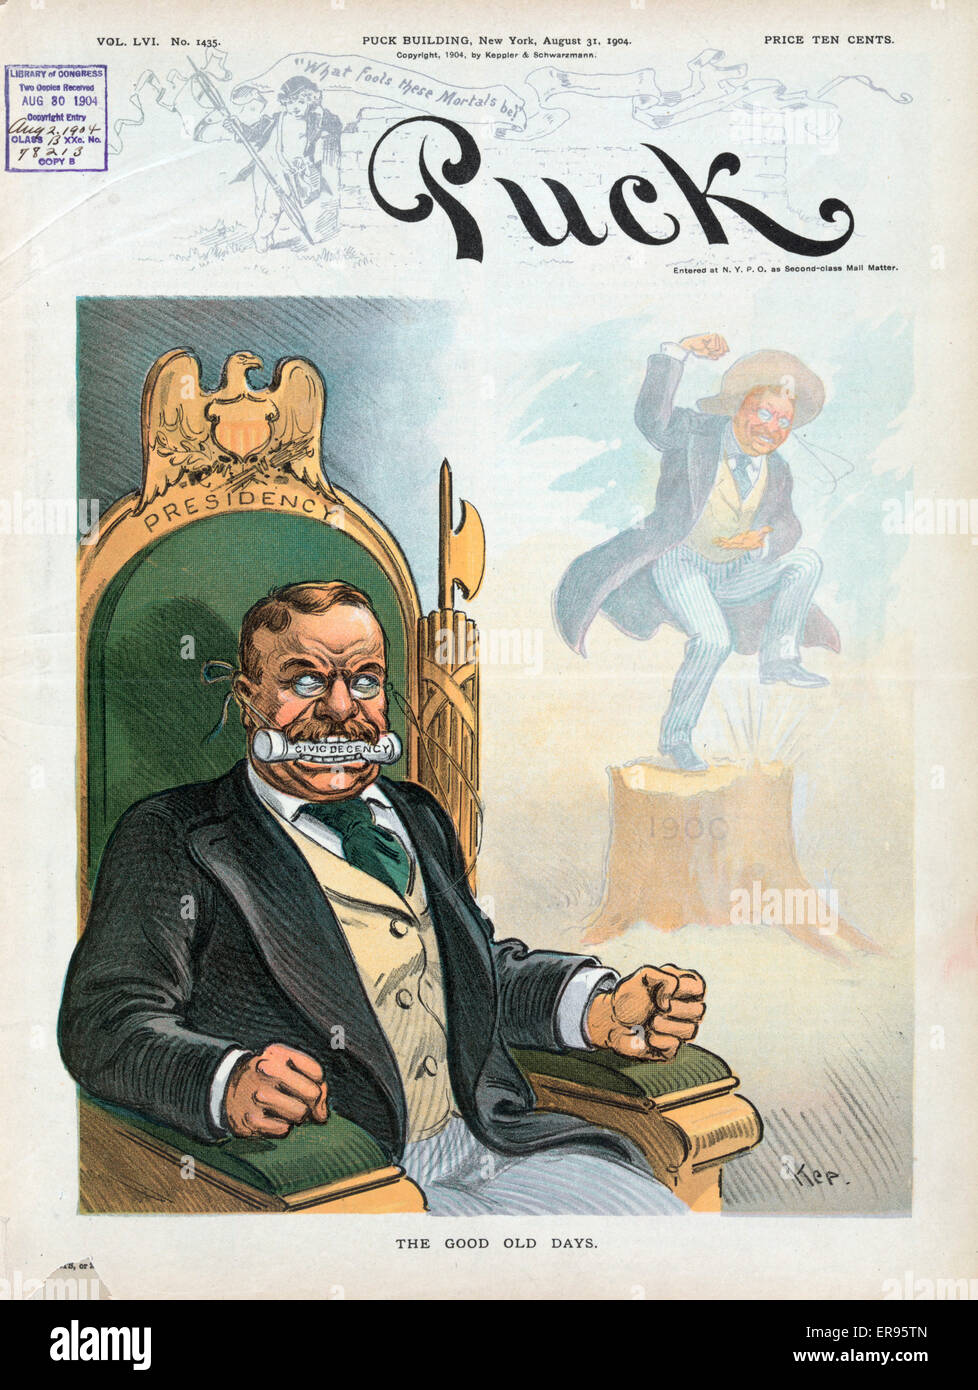 I buoni vecchi giorni. L'illustrazione mostra il presidente Theodore Roosevelt seduto in una sedia Presidenza marcato con un fasces dietro la sua spalla sinistra e con una gag marcato decenza civile nella sua bocca; egli è alla ricerca di uno spirito di se stesso dal 1900 quando egli potrebbe Foto Stock